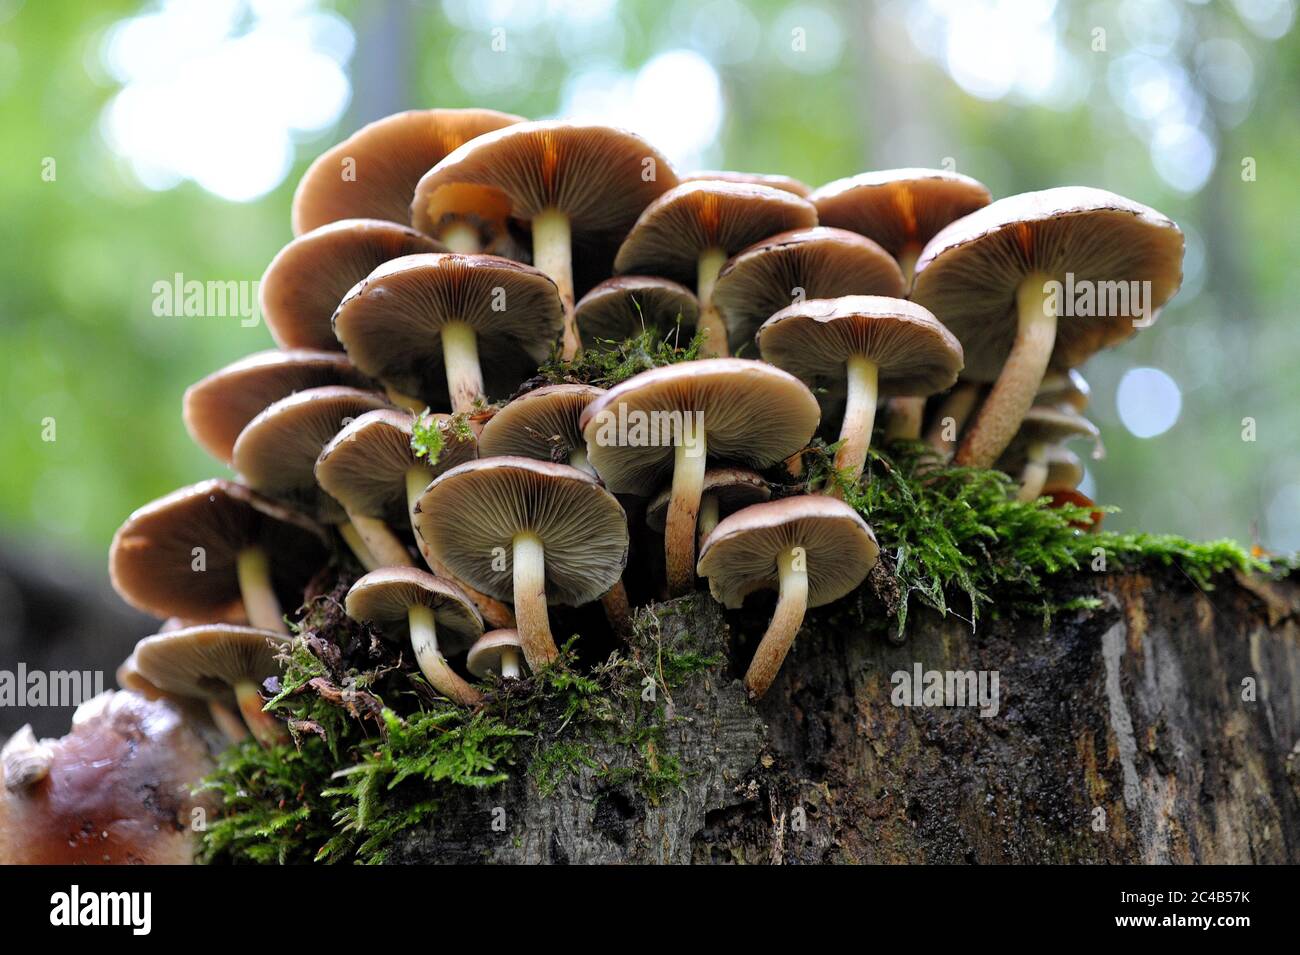 Two-tone woodtuft (Kuehneromyces mutabilis), Mushrooms on mossy tree stump, Germany Stock Photo